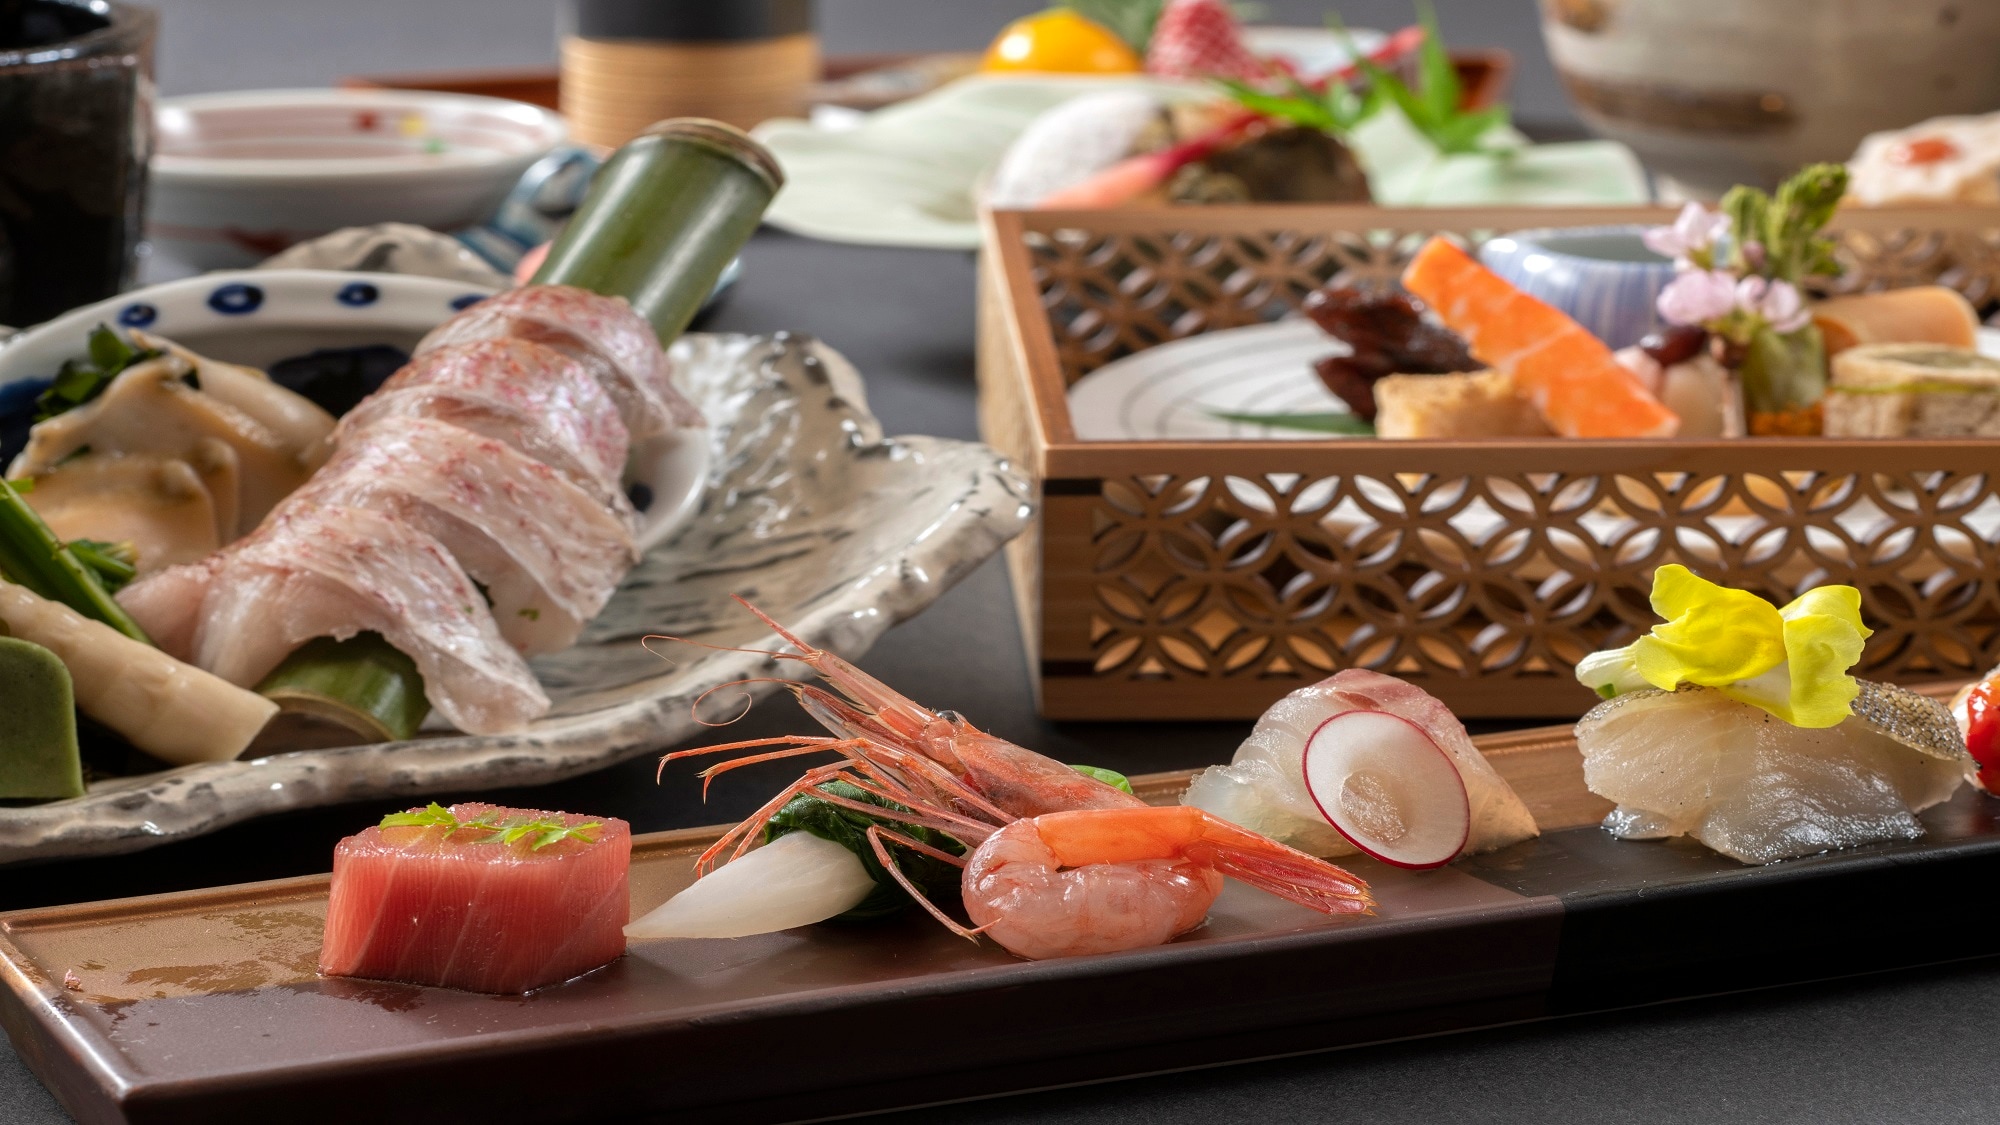 [ภาพอาหารมื้อเย็น] อาหารไคเซกิญี่ปุ่นที่คุณสามารถเพลิดเพลินกับ Notoguro สดและ Satoyama Satoumi ของ Noto